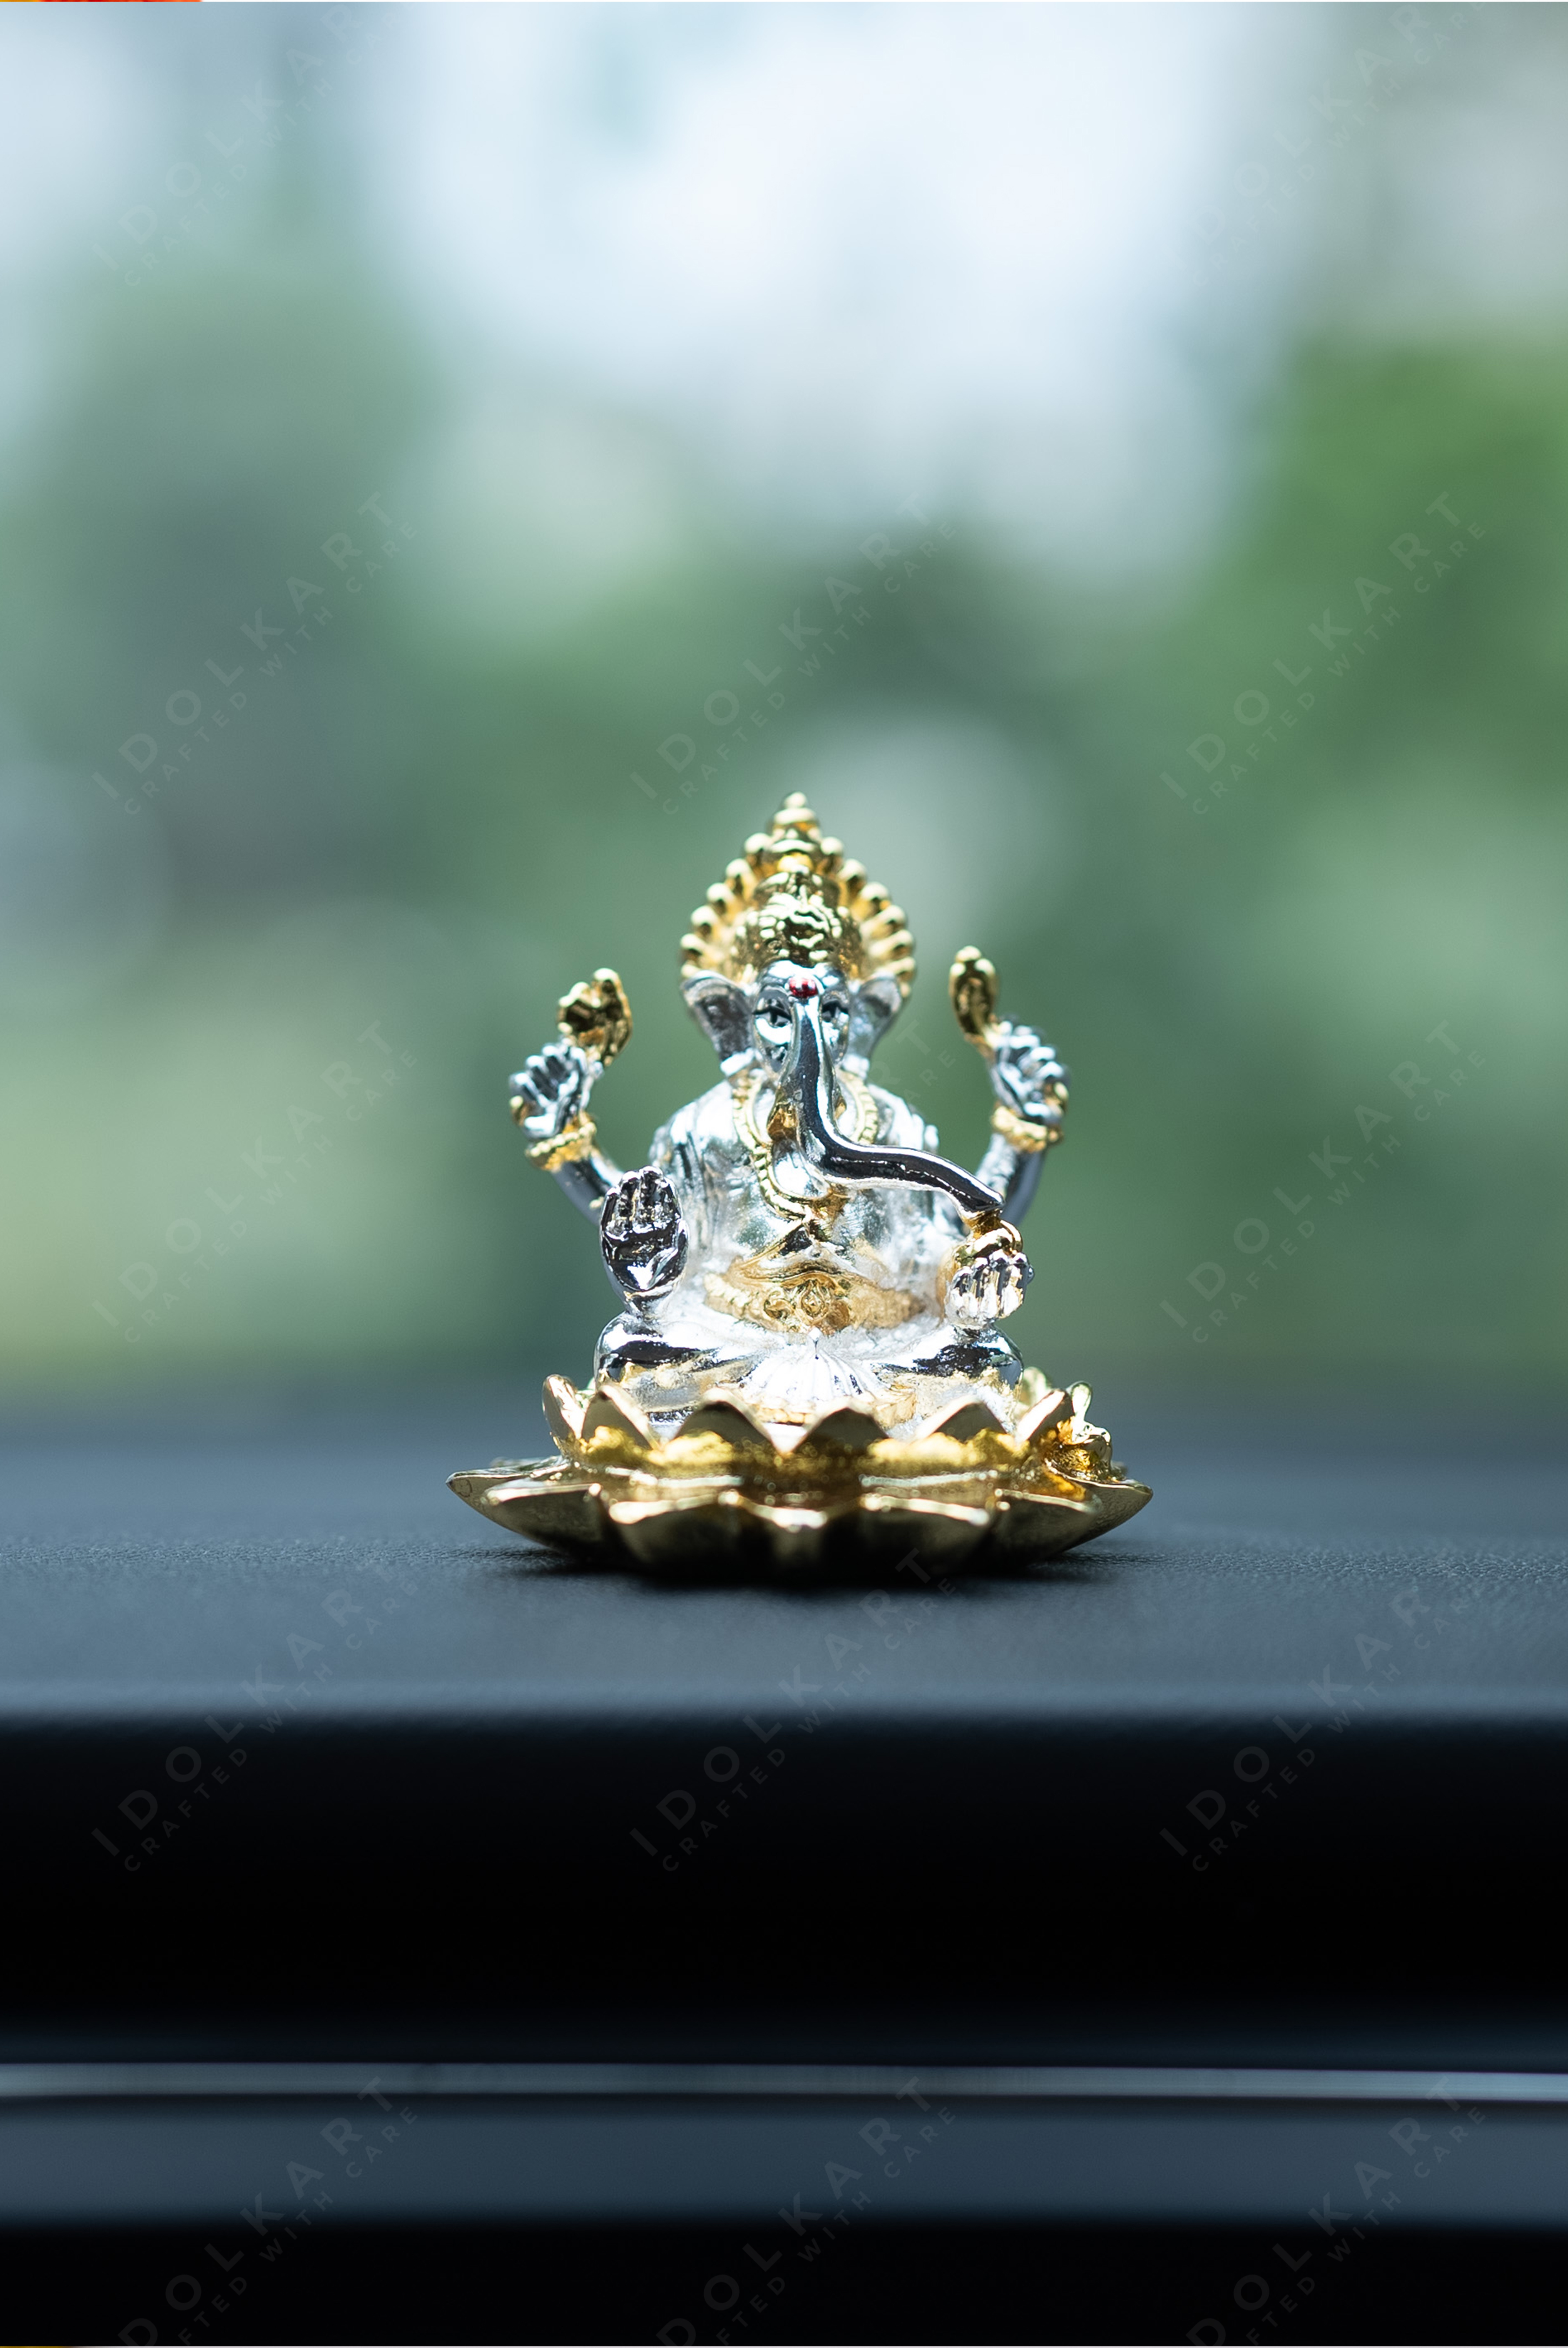 Gold & Silver Ganesha Idol on Lotus For Car Dashboard